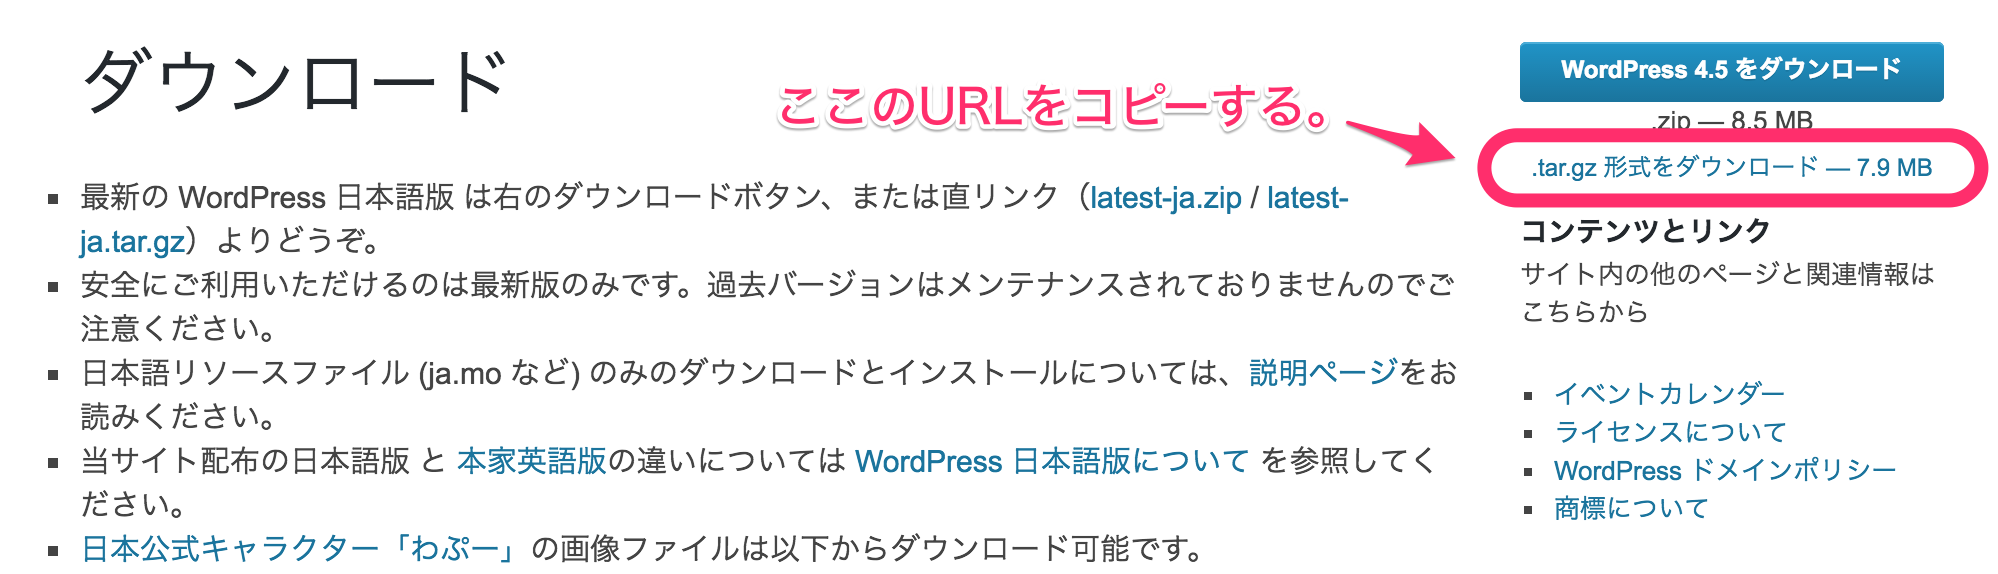 日本語_—_WordPress.png